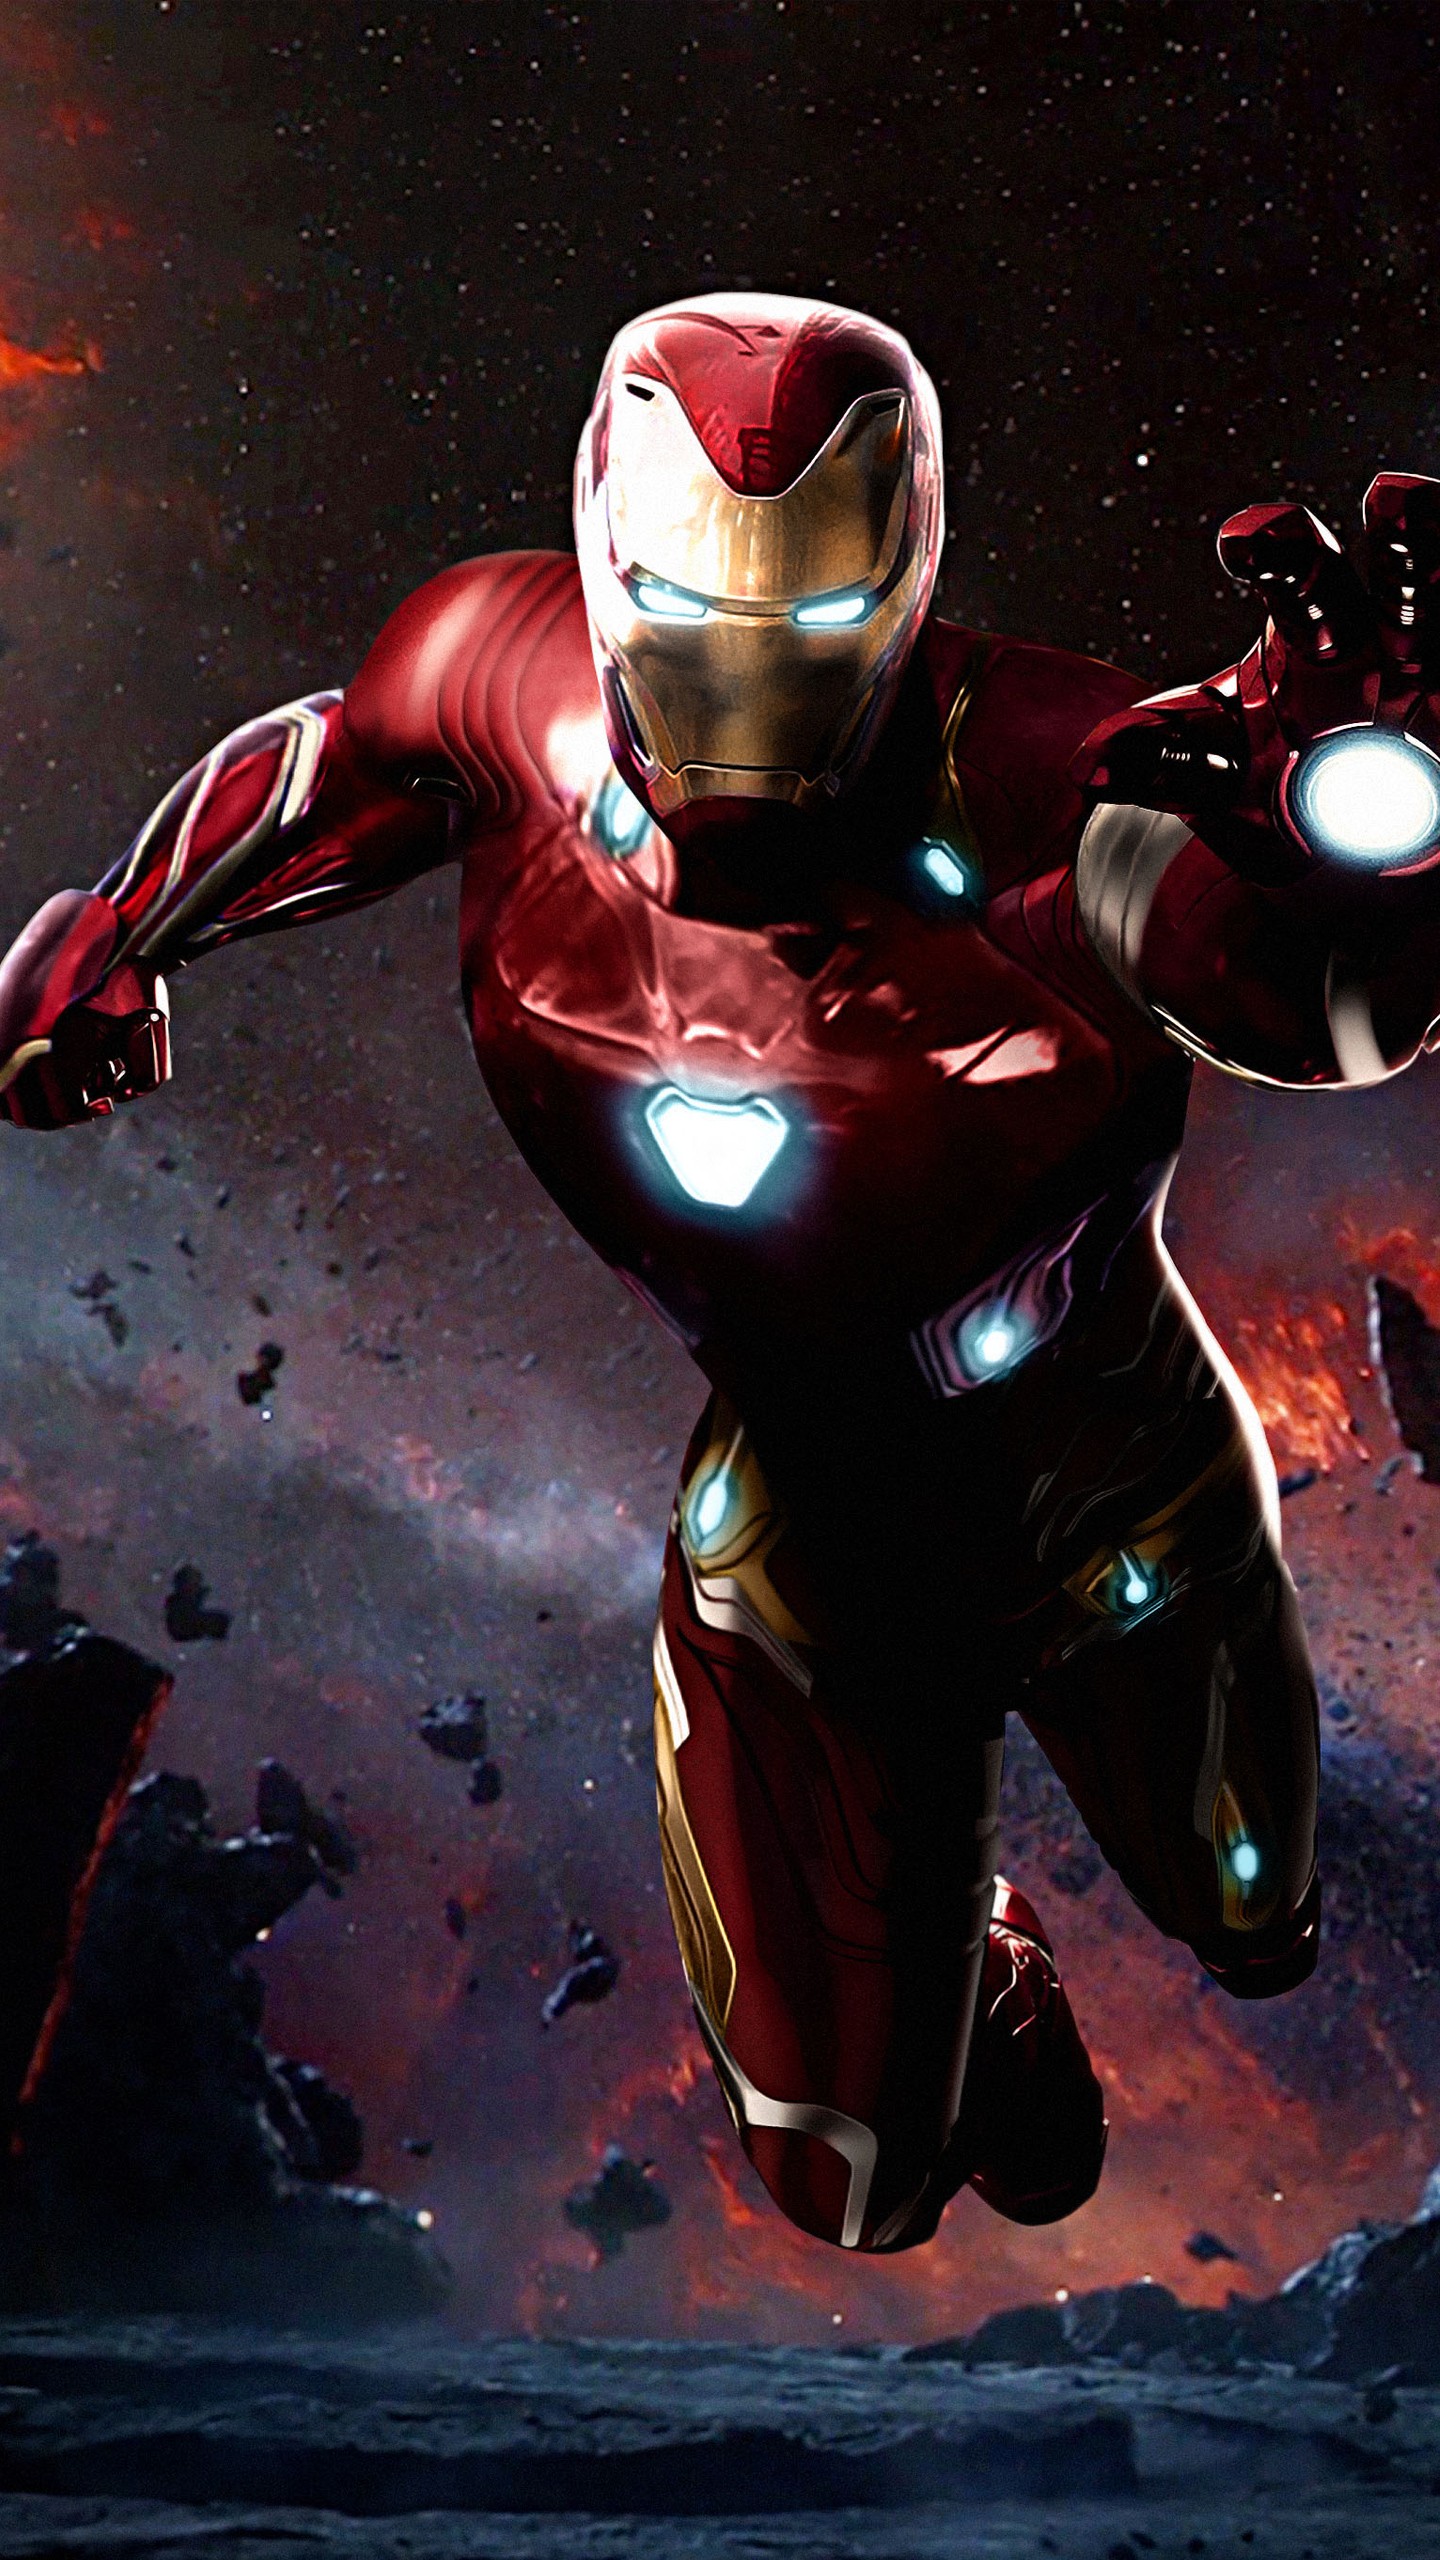 Mobiles Qhd - Ironman Avengers Infinity War , HD Wallpaper & Backgrounds